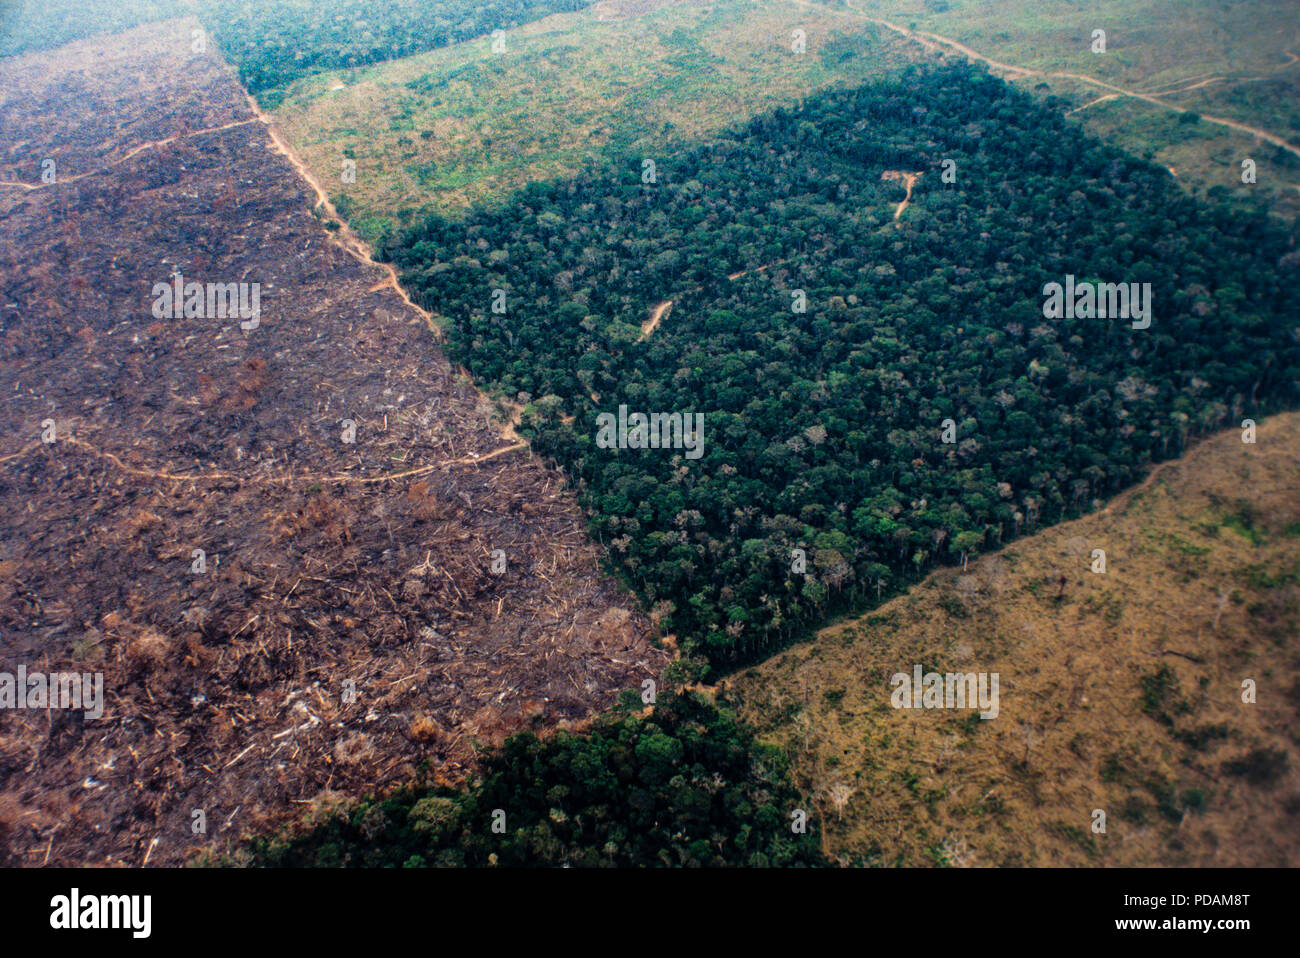 Vista aérea de la selva amazónica, la deforestación y la gestión agrícola para el ganado. El estado de Acre, Brasil. Foto de stock